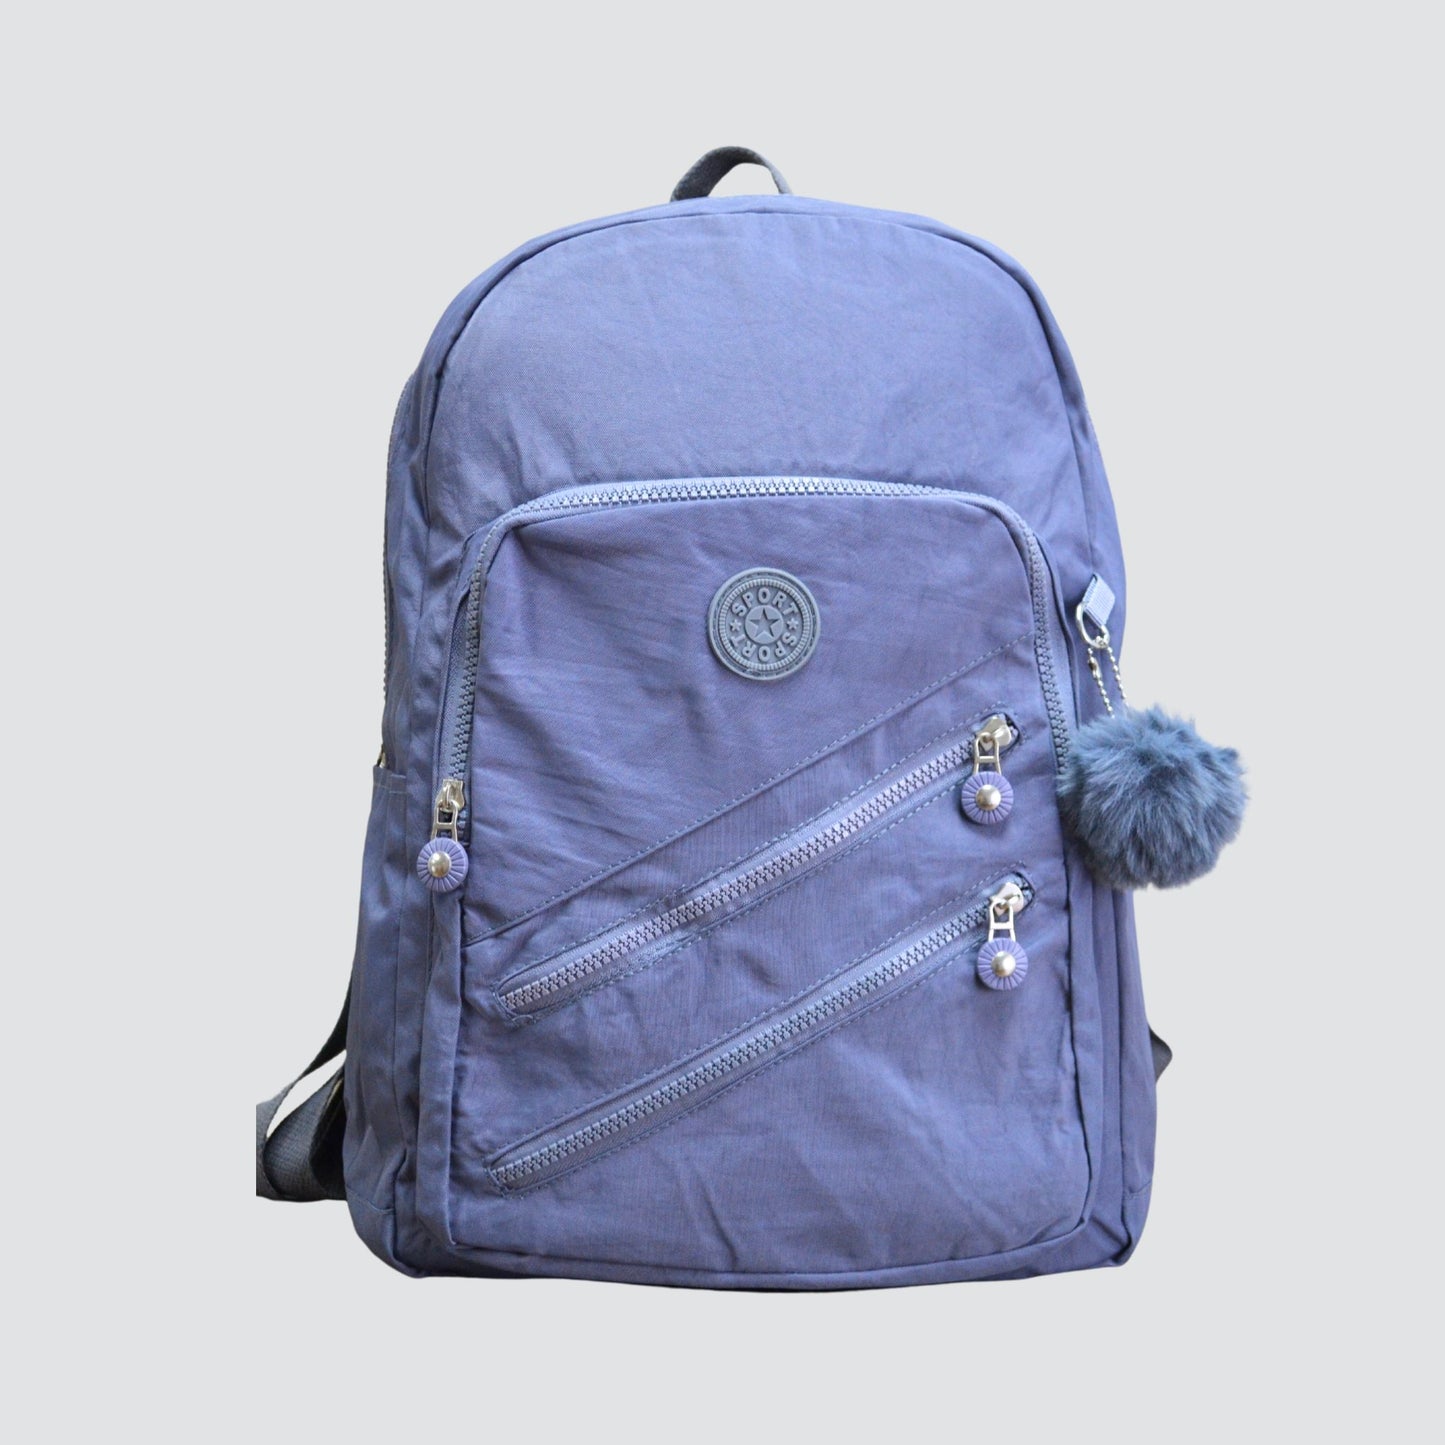 Light Blue Sport Multipurpose Backpack